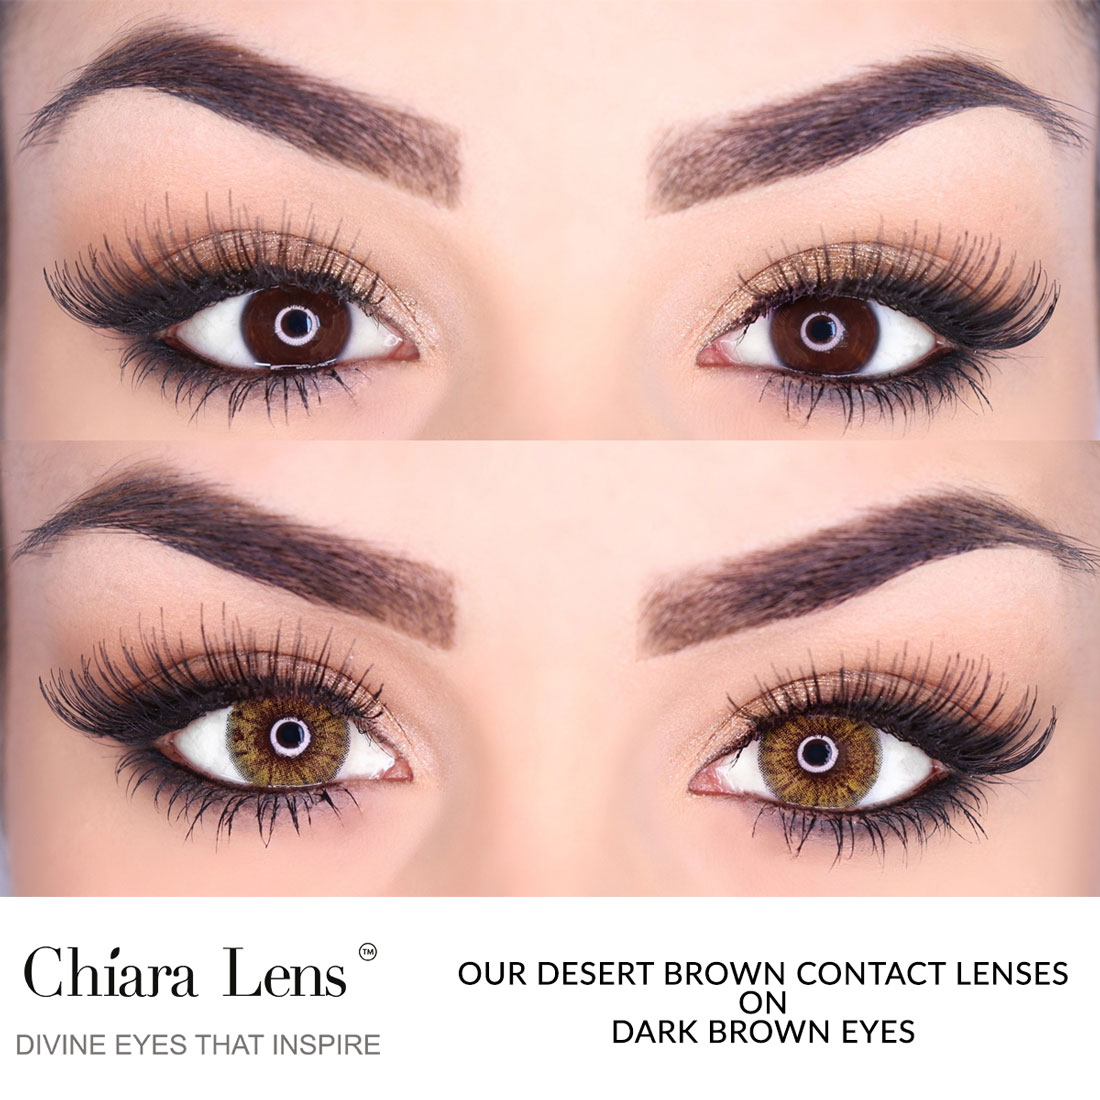 Brown Contact Lenses On Dark Brown Eyes